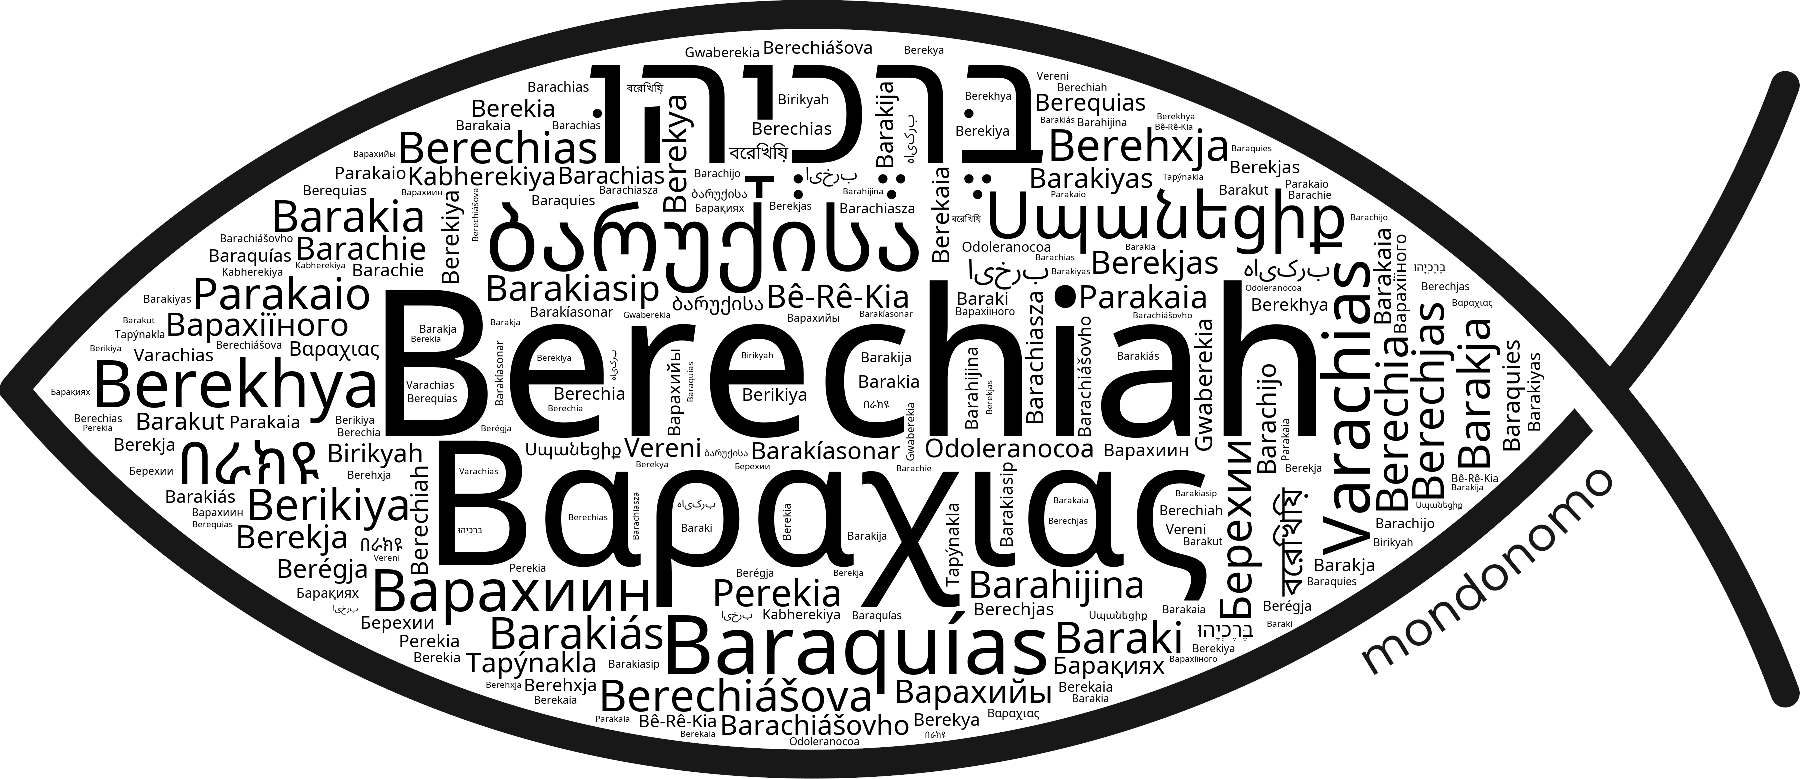 Name Berechiah in the world's Bibles